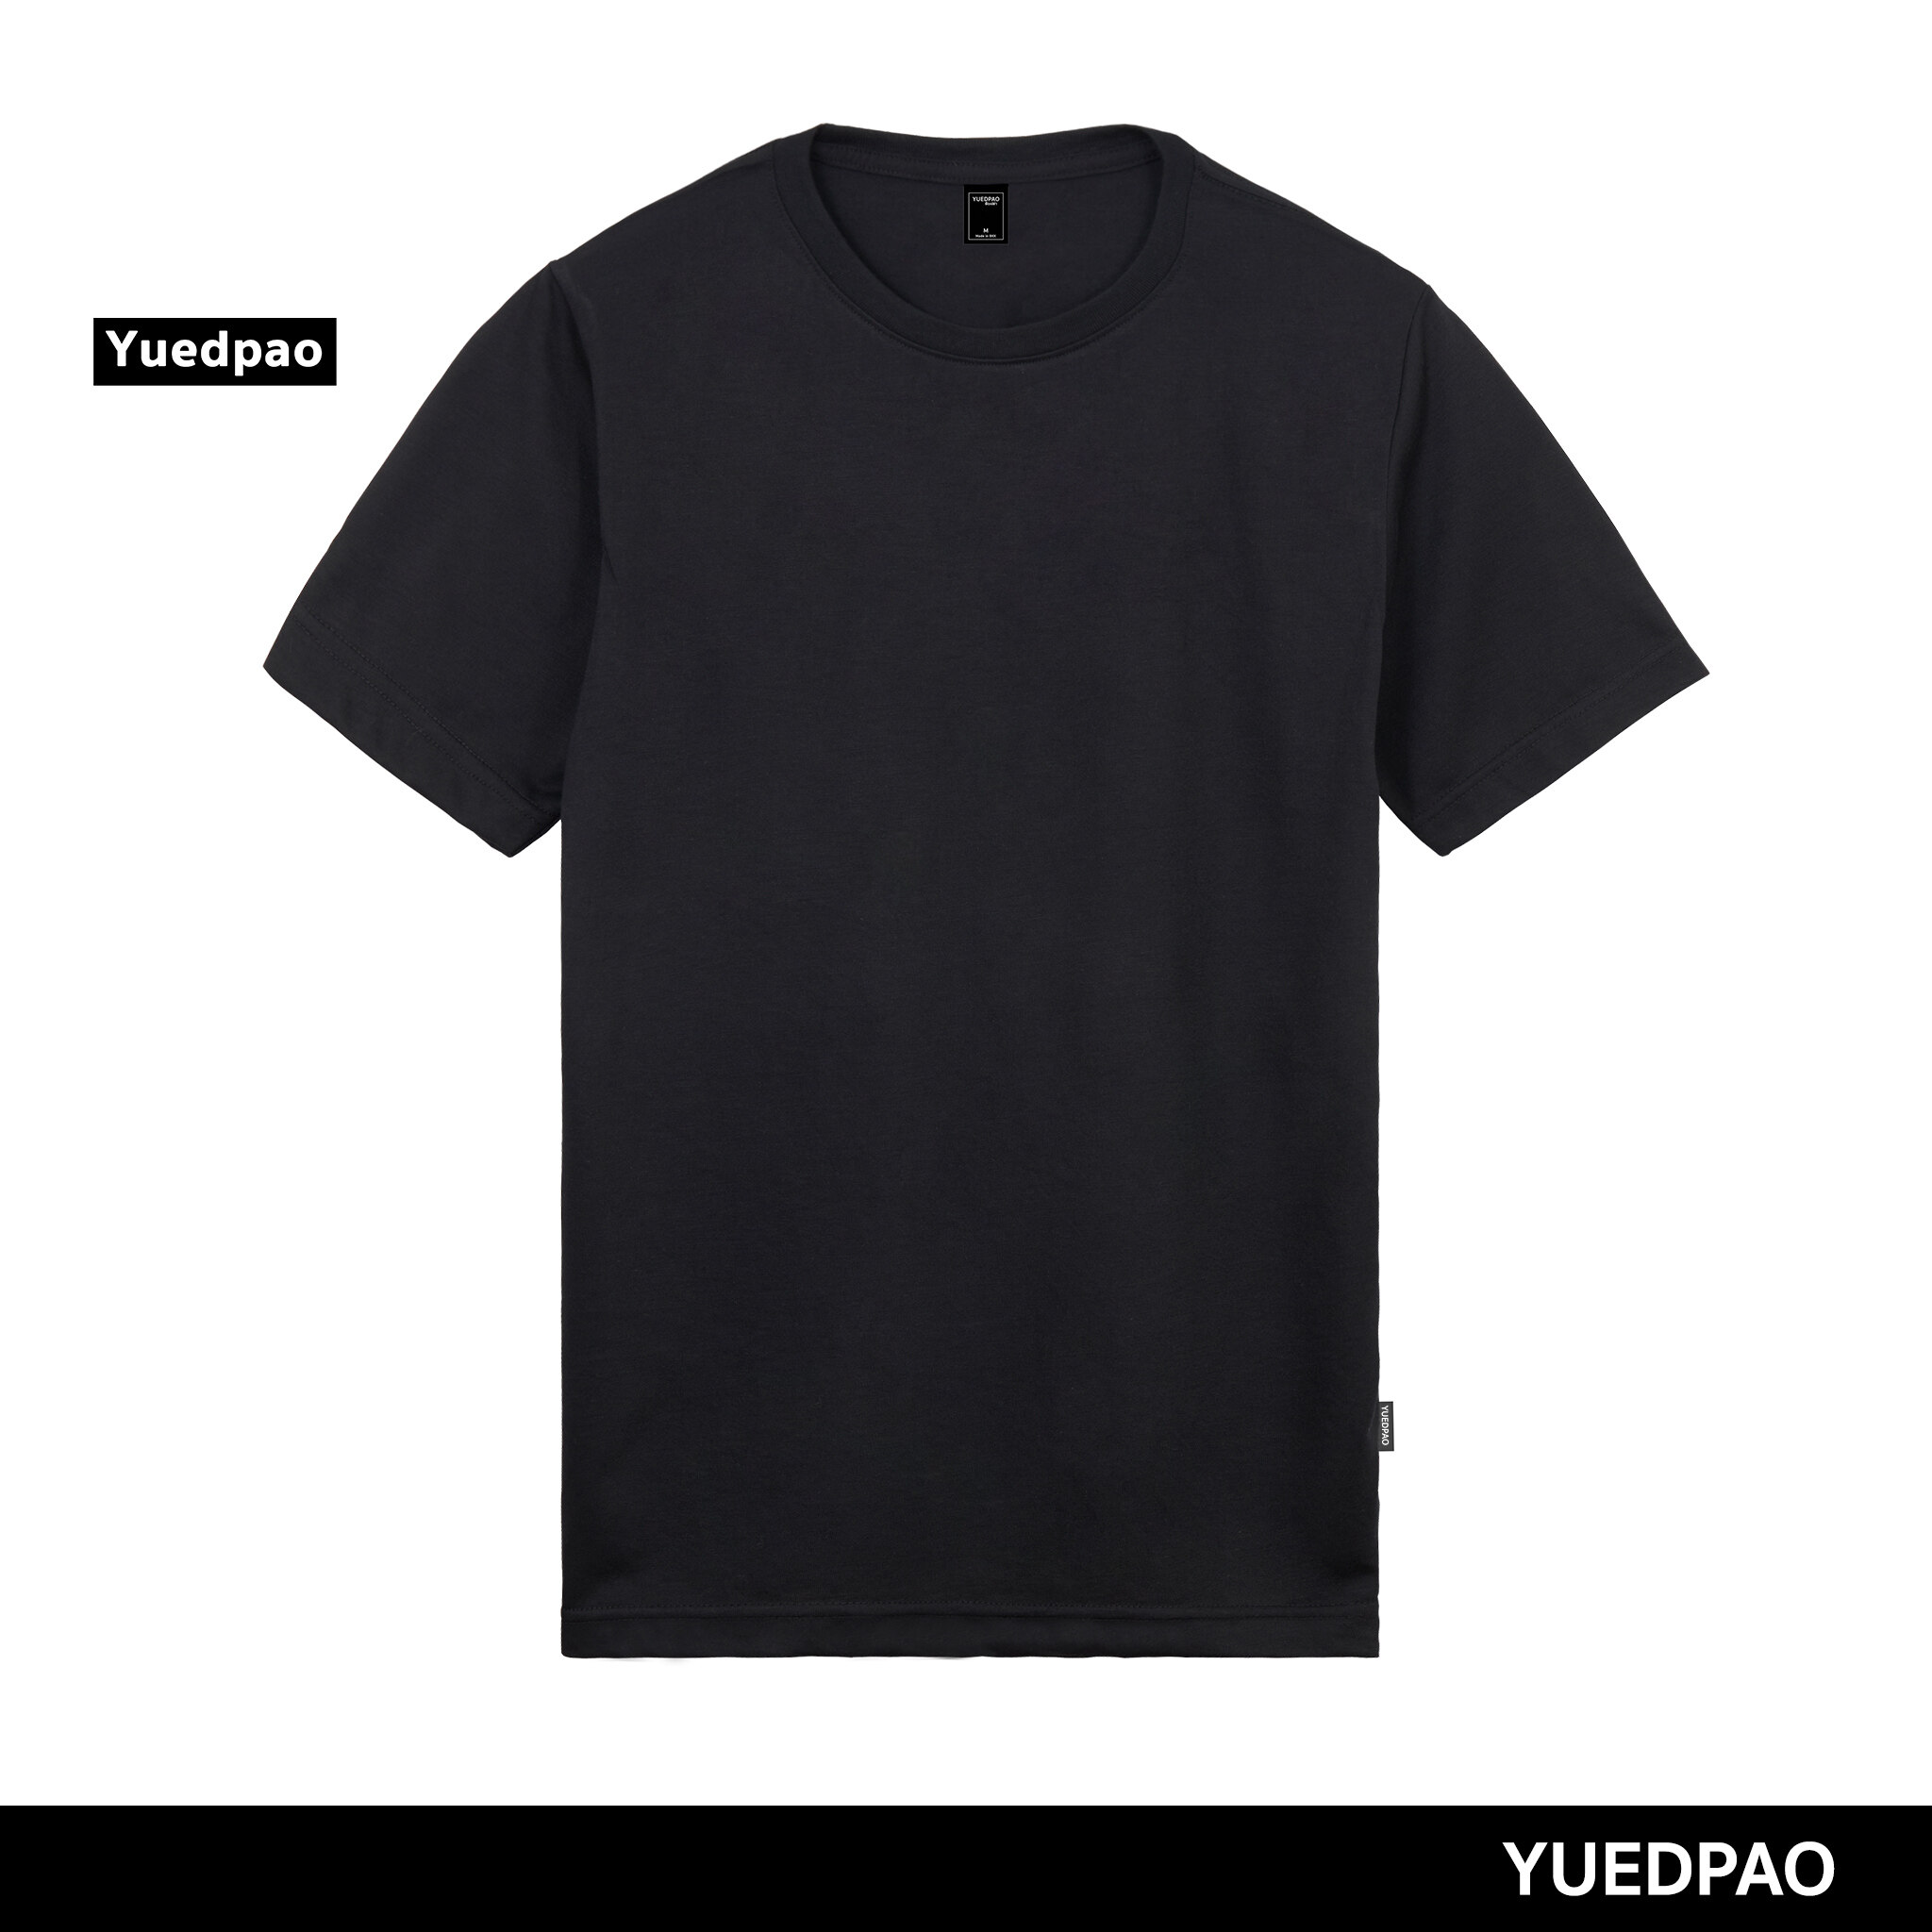 Yuedpao ยอดขาย No.1 รับประกันไม่ย้วย 2 ปี ผ้านุ่ม เสื้อยืดเปล่า เสื้อยืดสีพื้น เสื้อยืดคอกลม_สีดำ